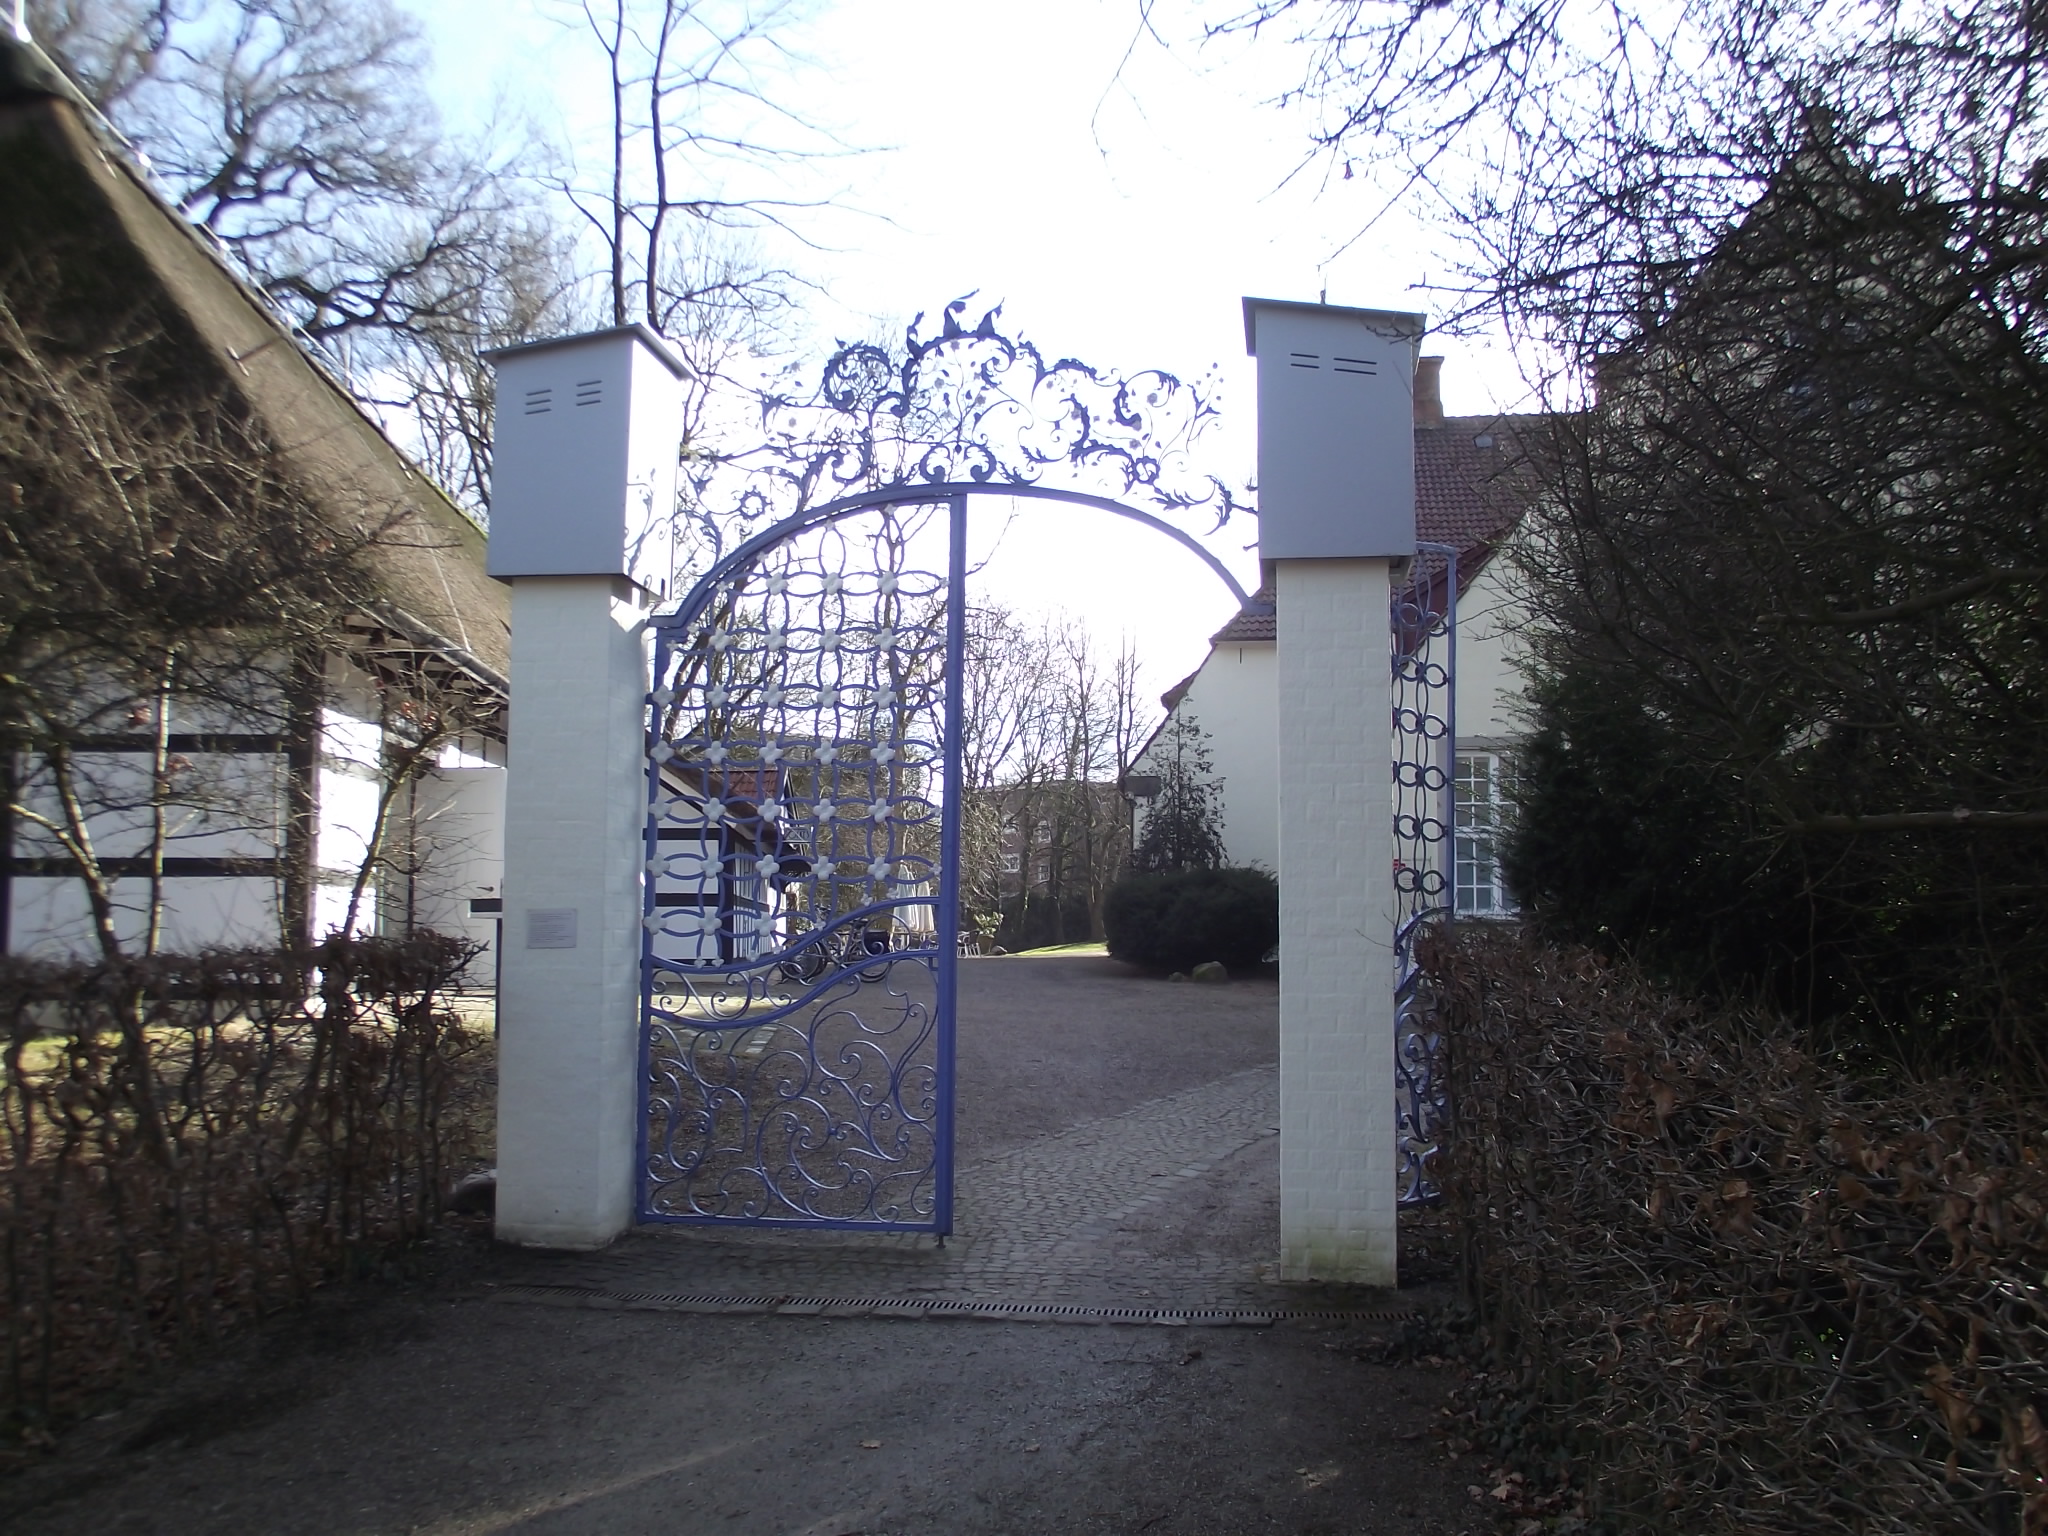 Eingang zum Haus Riensberg vom Focke Museum in Bremen